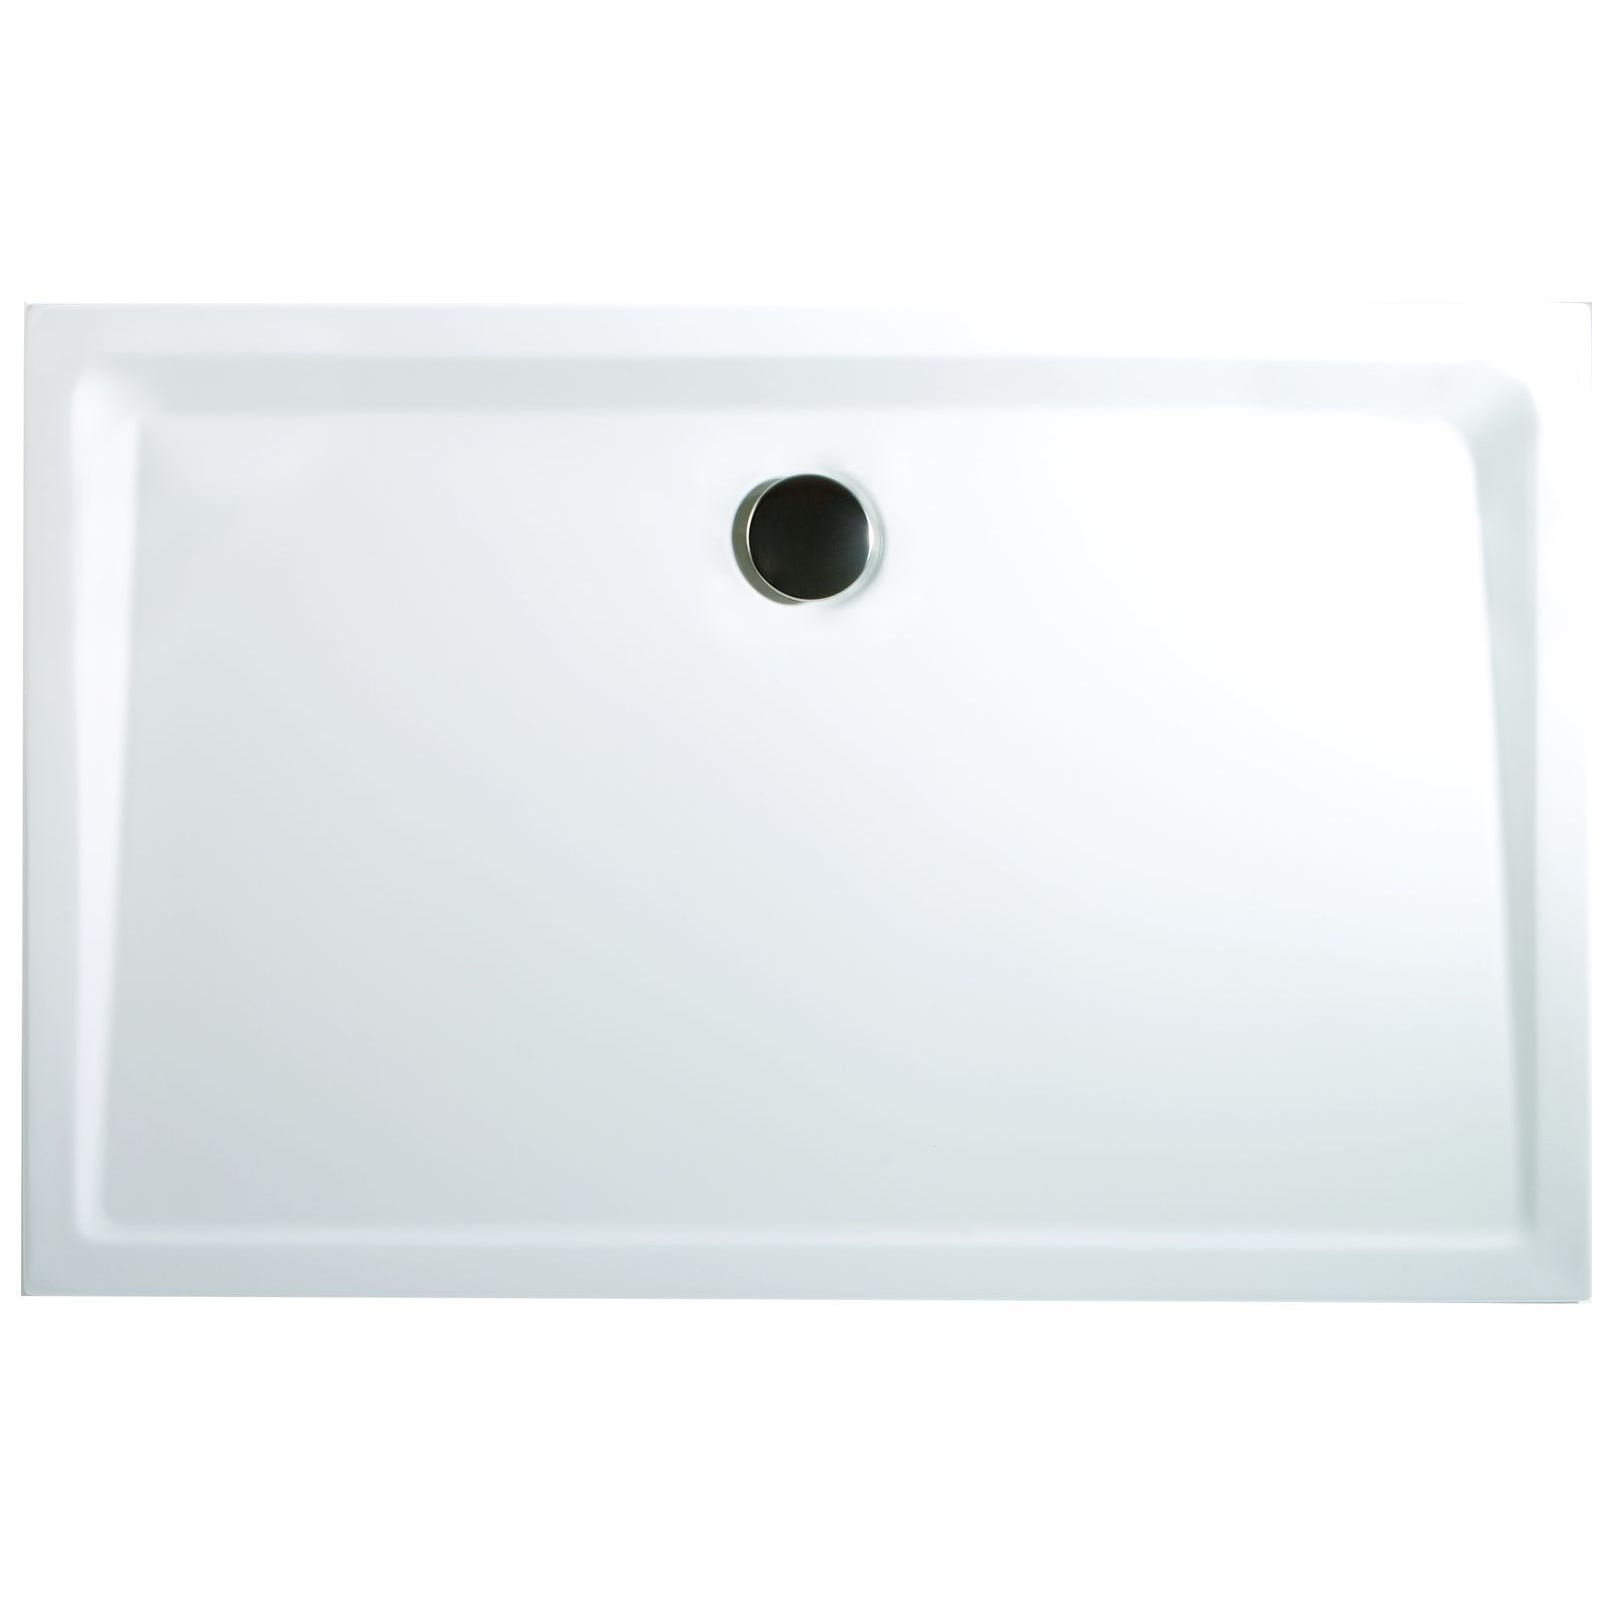 Schulte receveur de douche acrylique, 120 x 90 x 3,5 cm, effet blanc, rectangulaire, extra plat à poser ou à encastrer, avec pieds, bac à douche 0